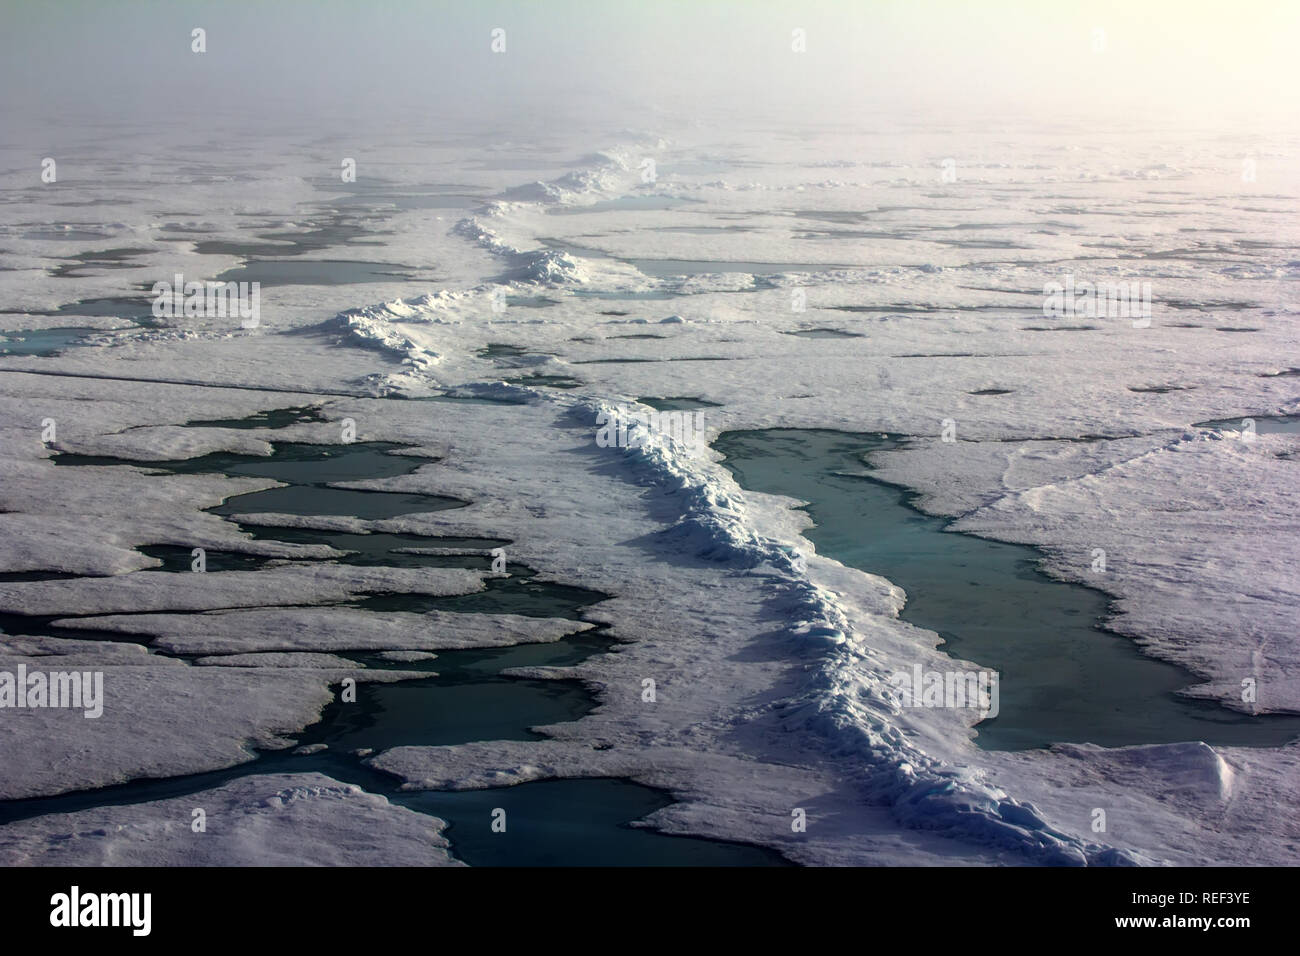 La banquise près du pôle Nord, la glace polaire bosselée. Journée polaire dans la position la plus basse du soleil à la fin de juin Banque D'Images